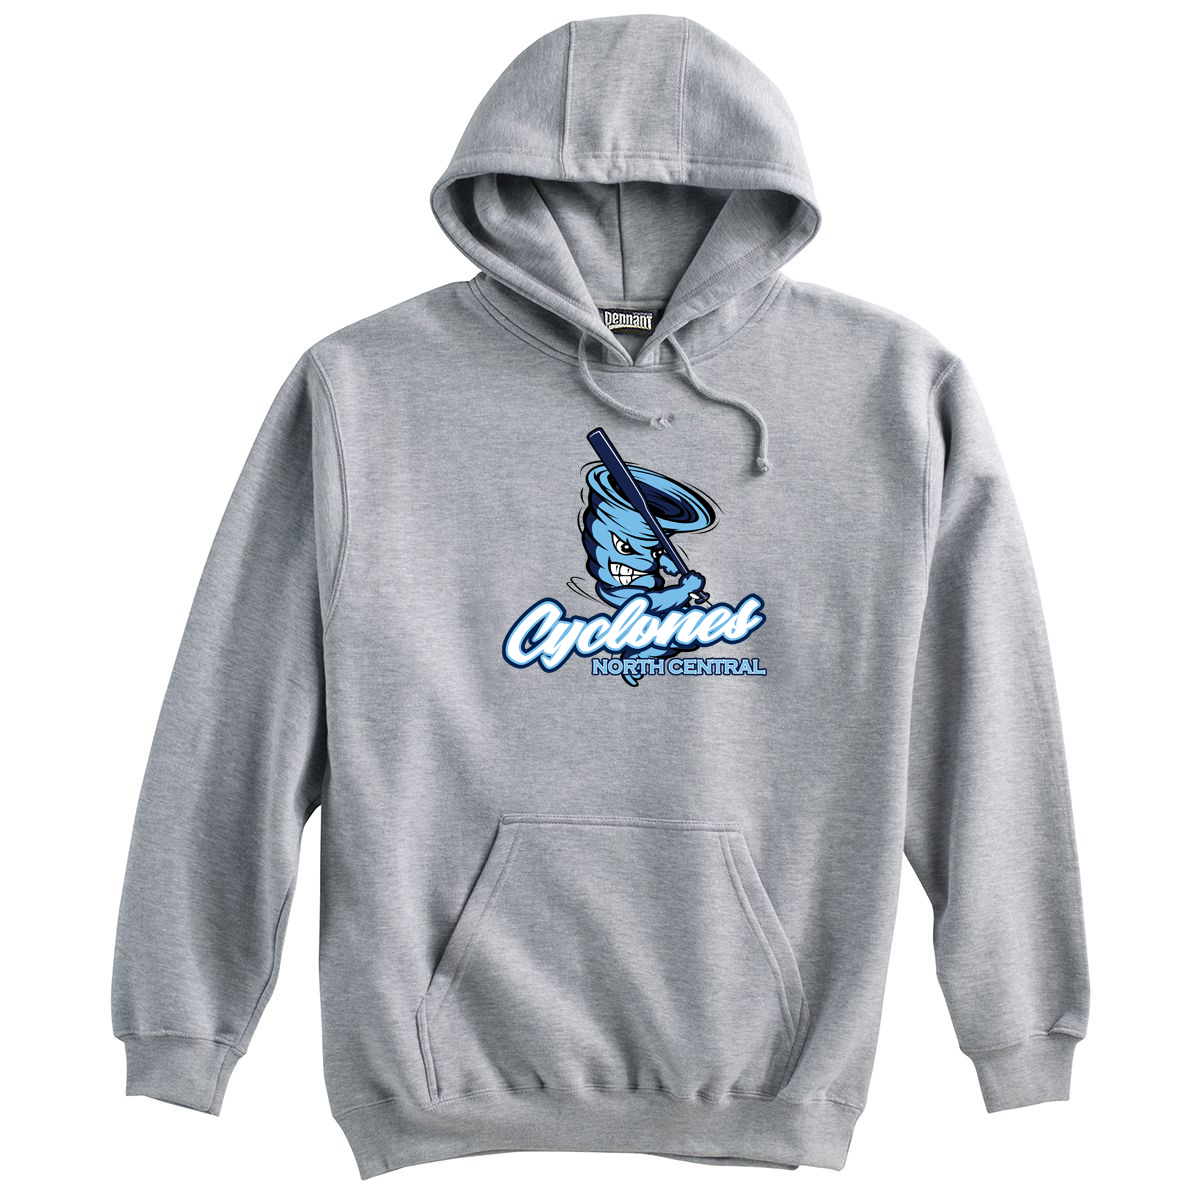 Cyclones Baseball Sweatshirt